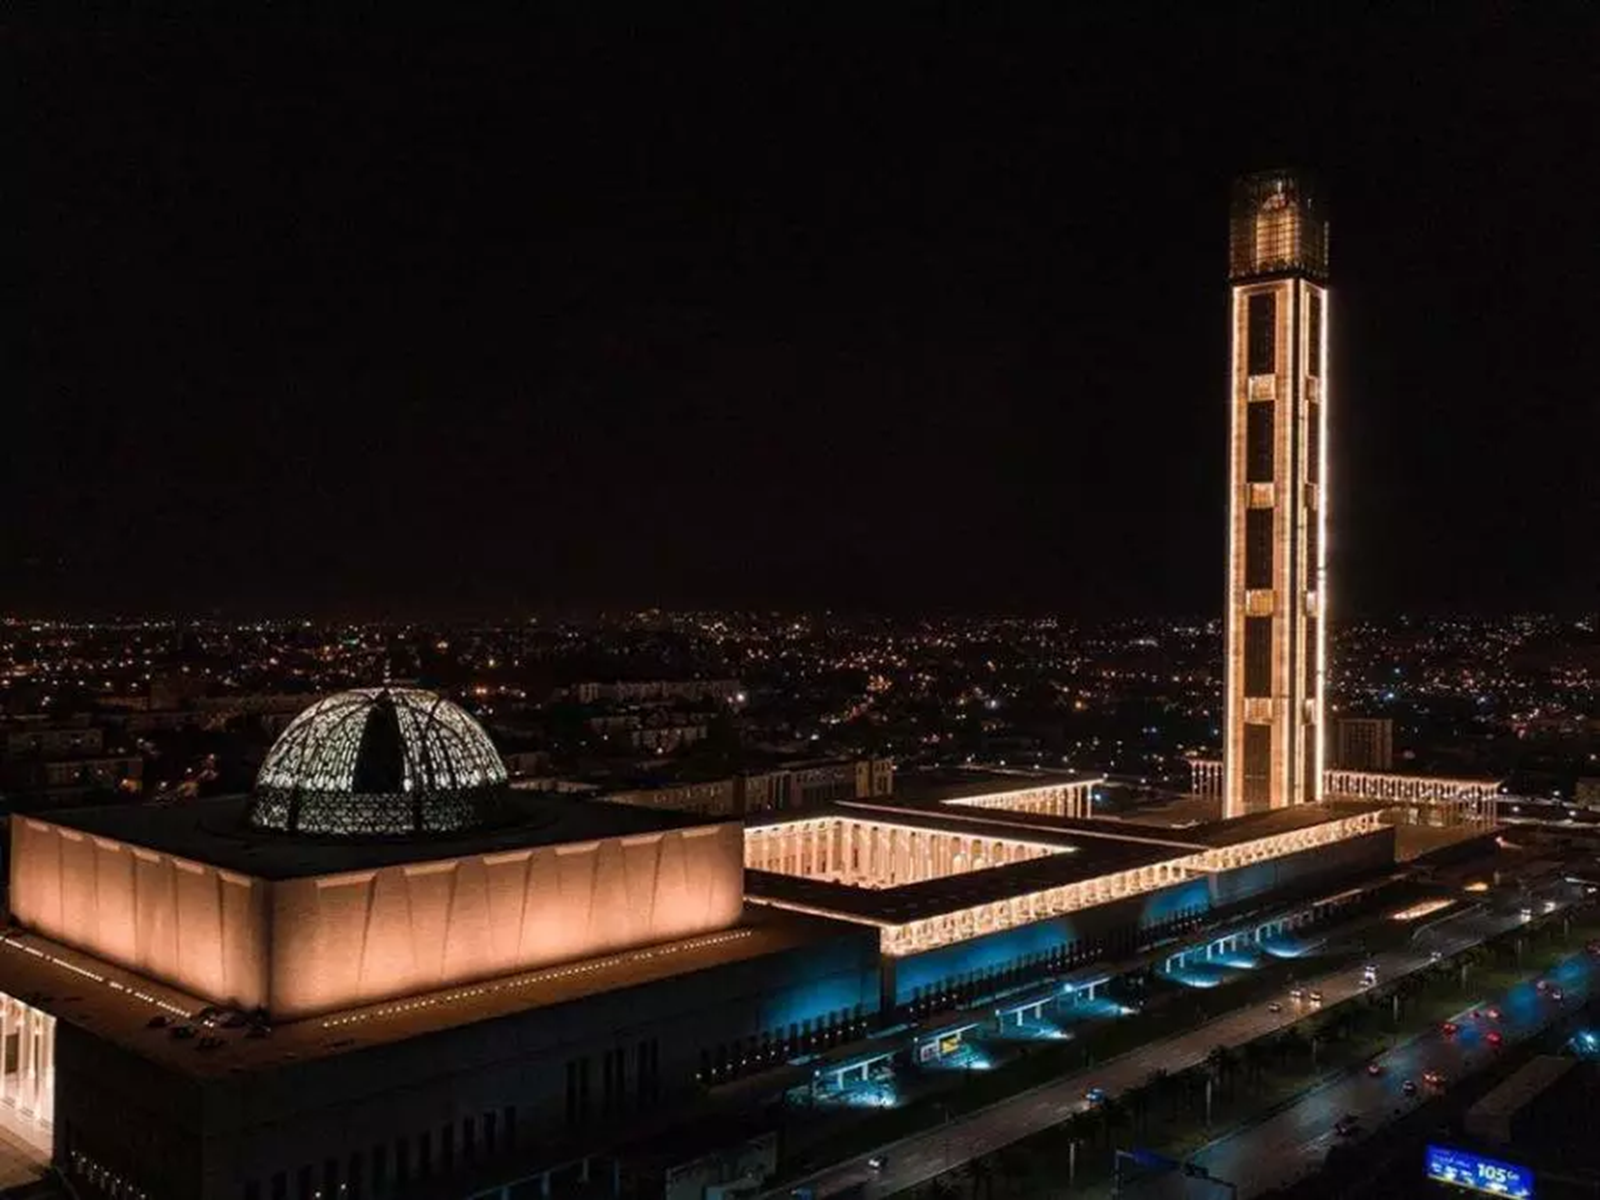 Algérie  Inauguration de la Mosquée Djamaâ El Djazaïr, joyau architectural et nouveau record africain